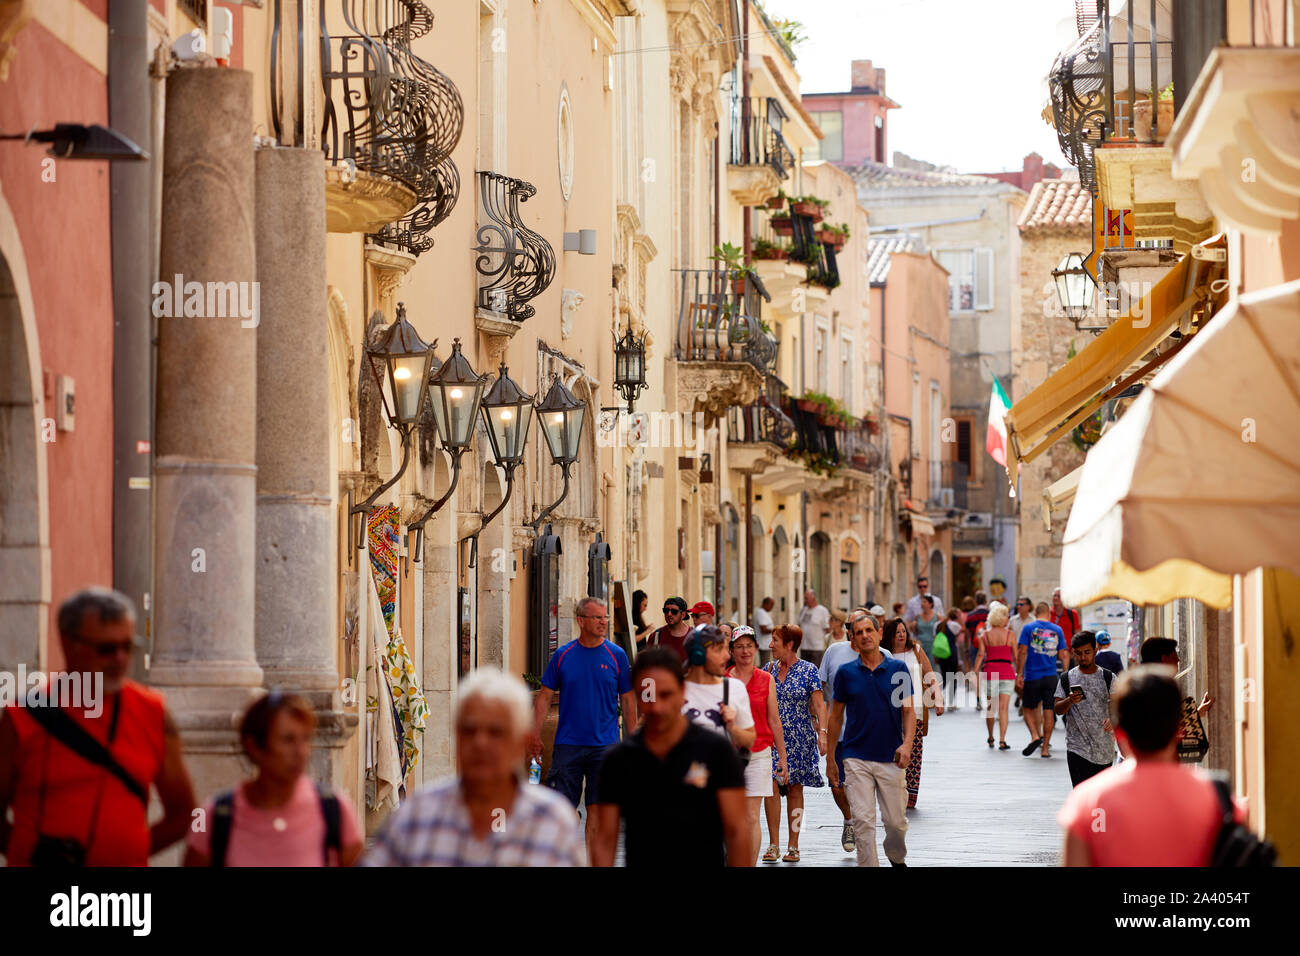 Streets scenes in Taormina, Sicily Stock Photo